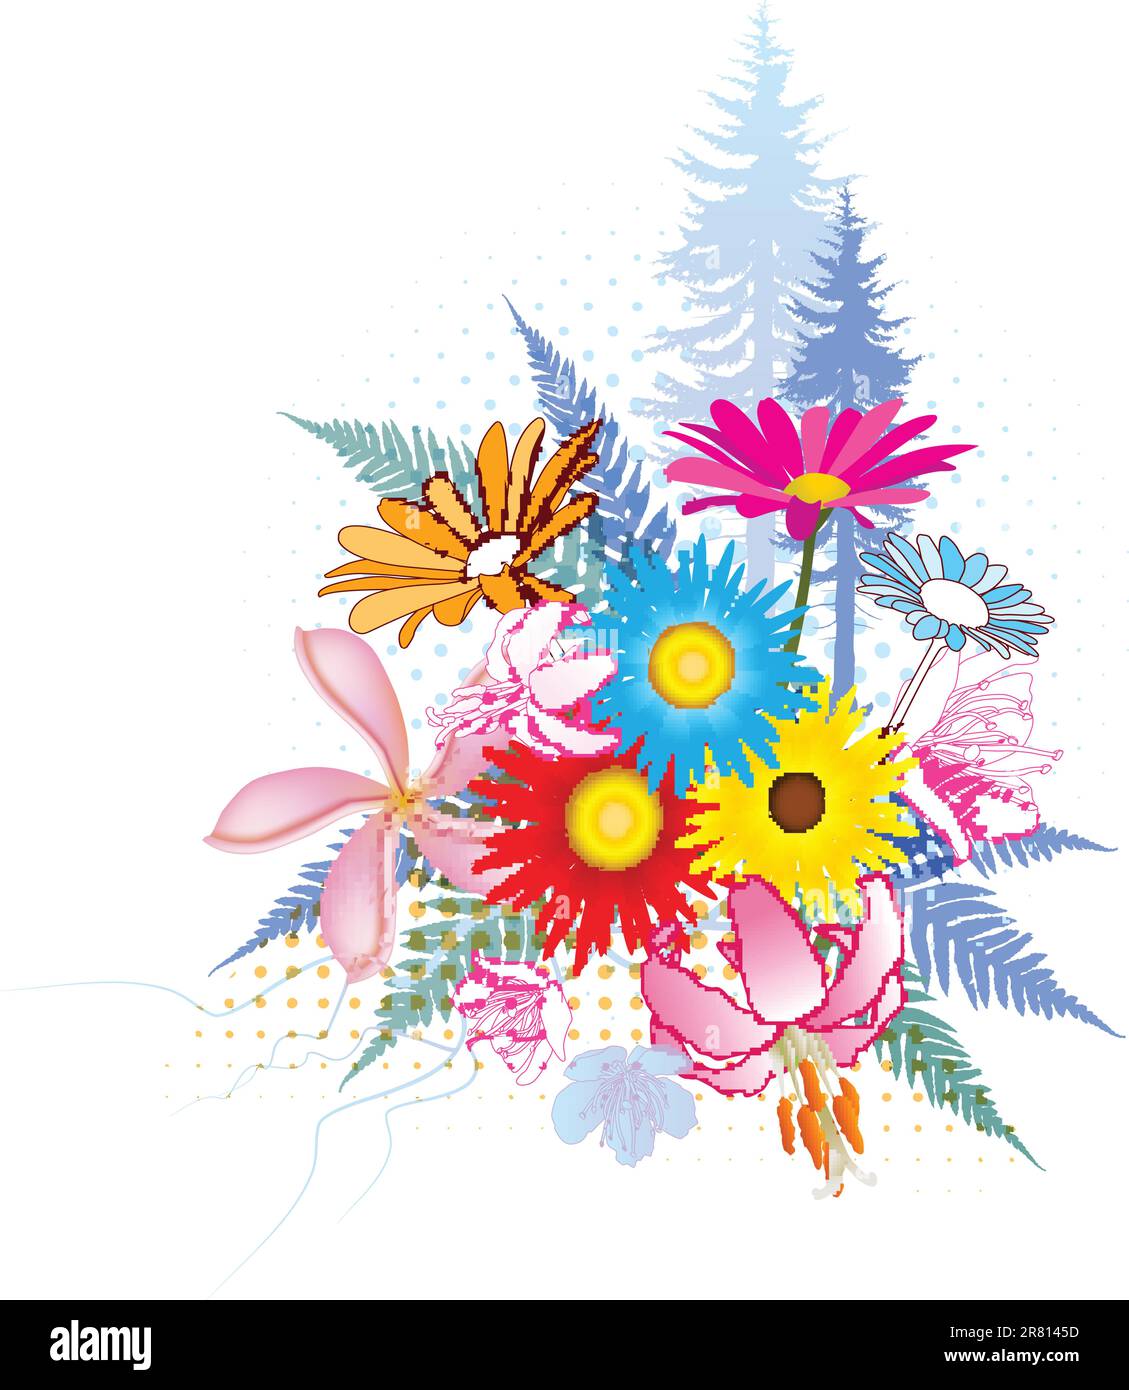 Natürliche Collage-Illustrationen mit vielen bunten Blumen, Farnen und Bäumen Stock Vektor